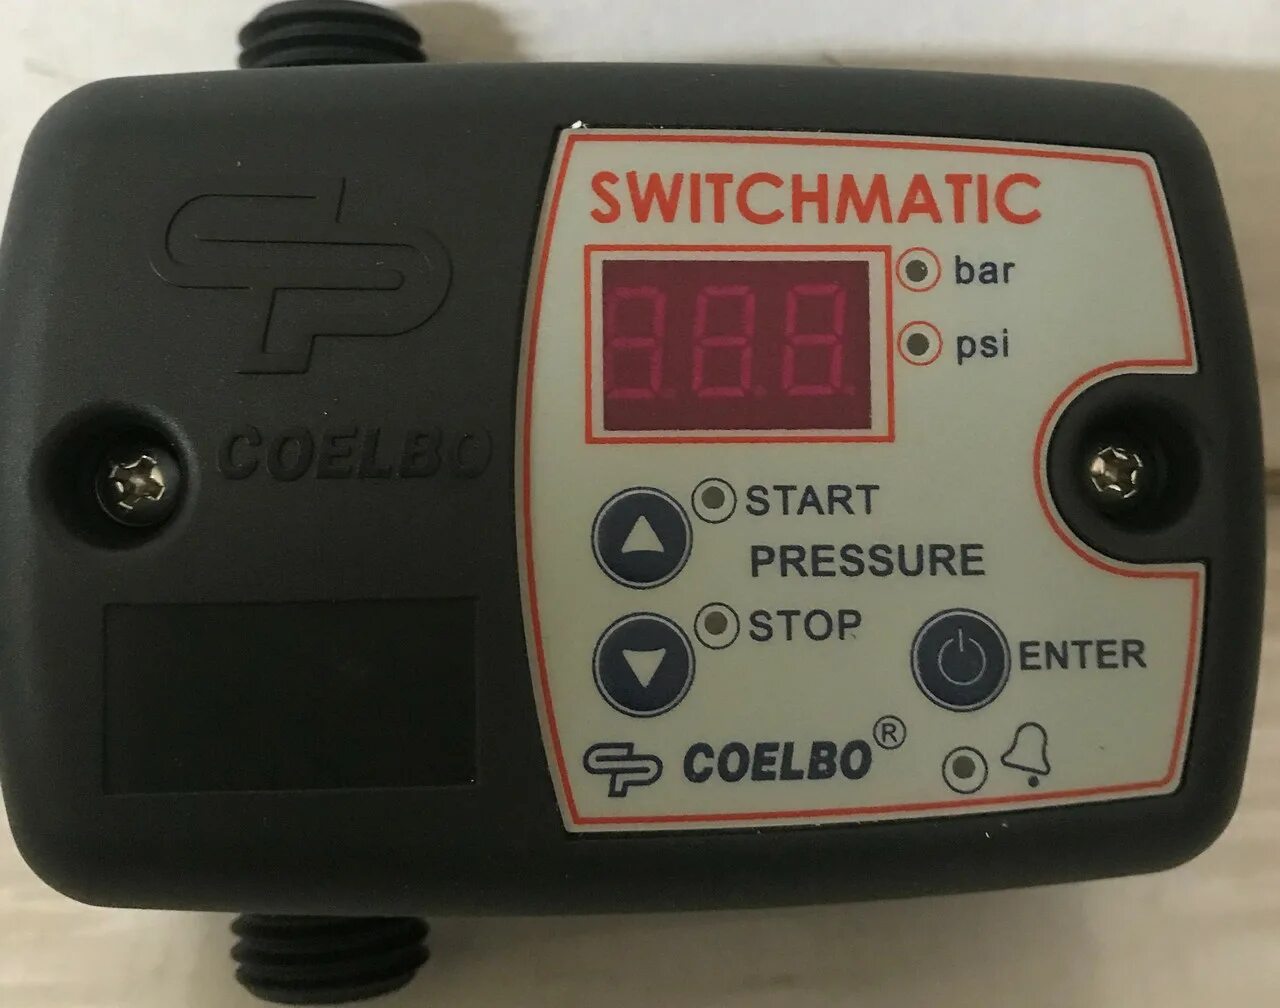 Switchmatic 1. Реле давления Coelbo. Реле давления switchmatic1 для насоса. Coelbo SWITCHMATIC 1.